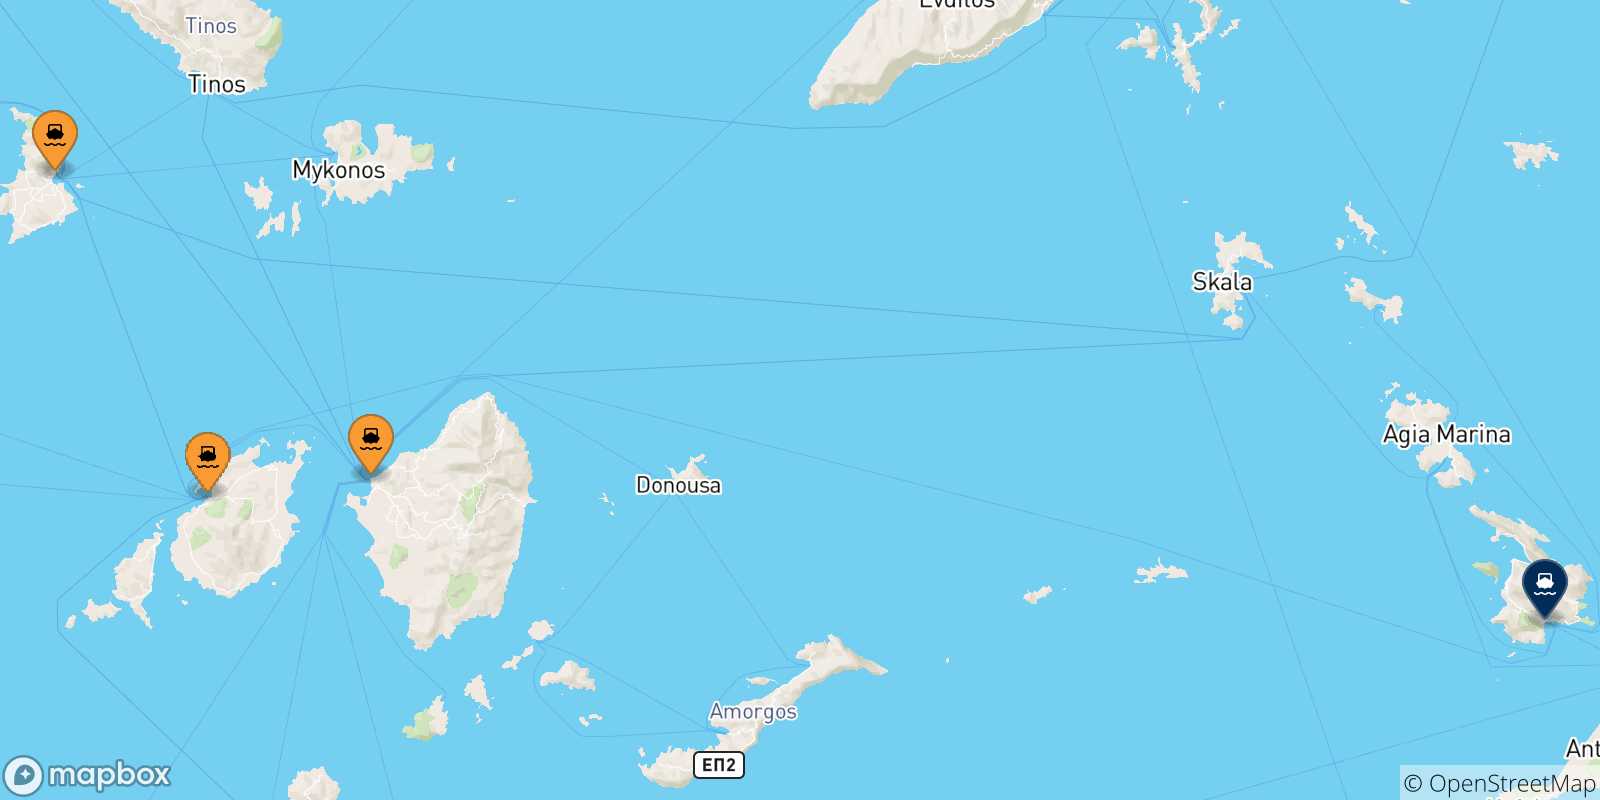 Mappa delle possibili rotte tra le Isole Cicladi e Kalymnos